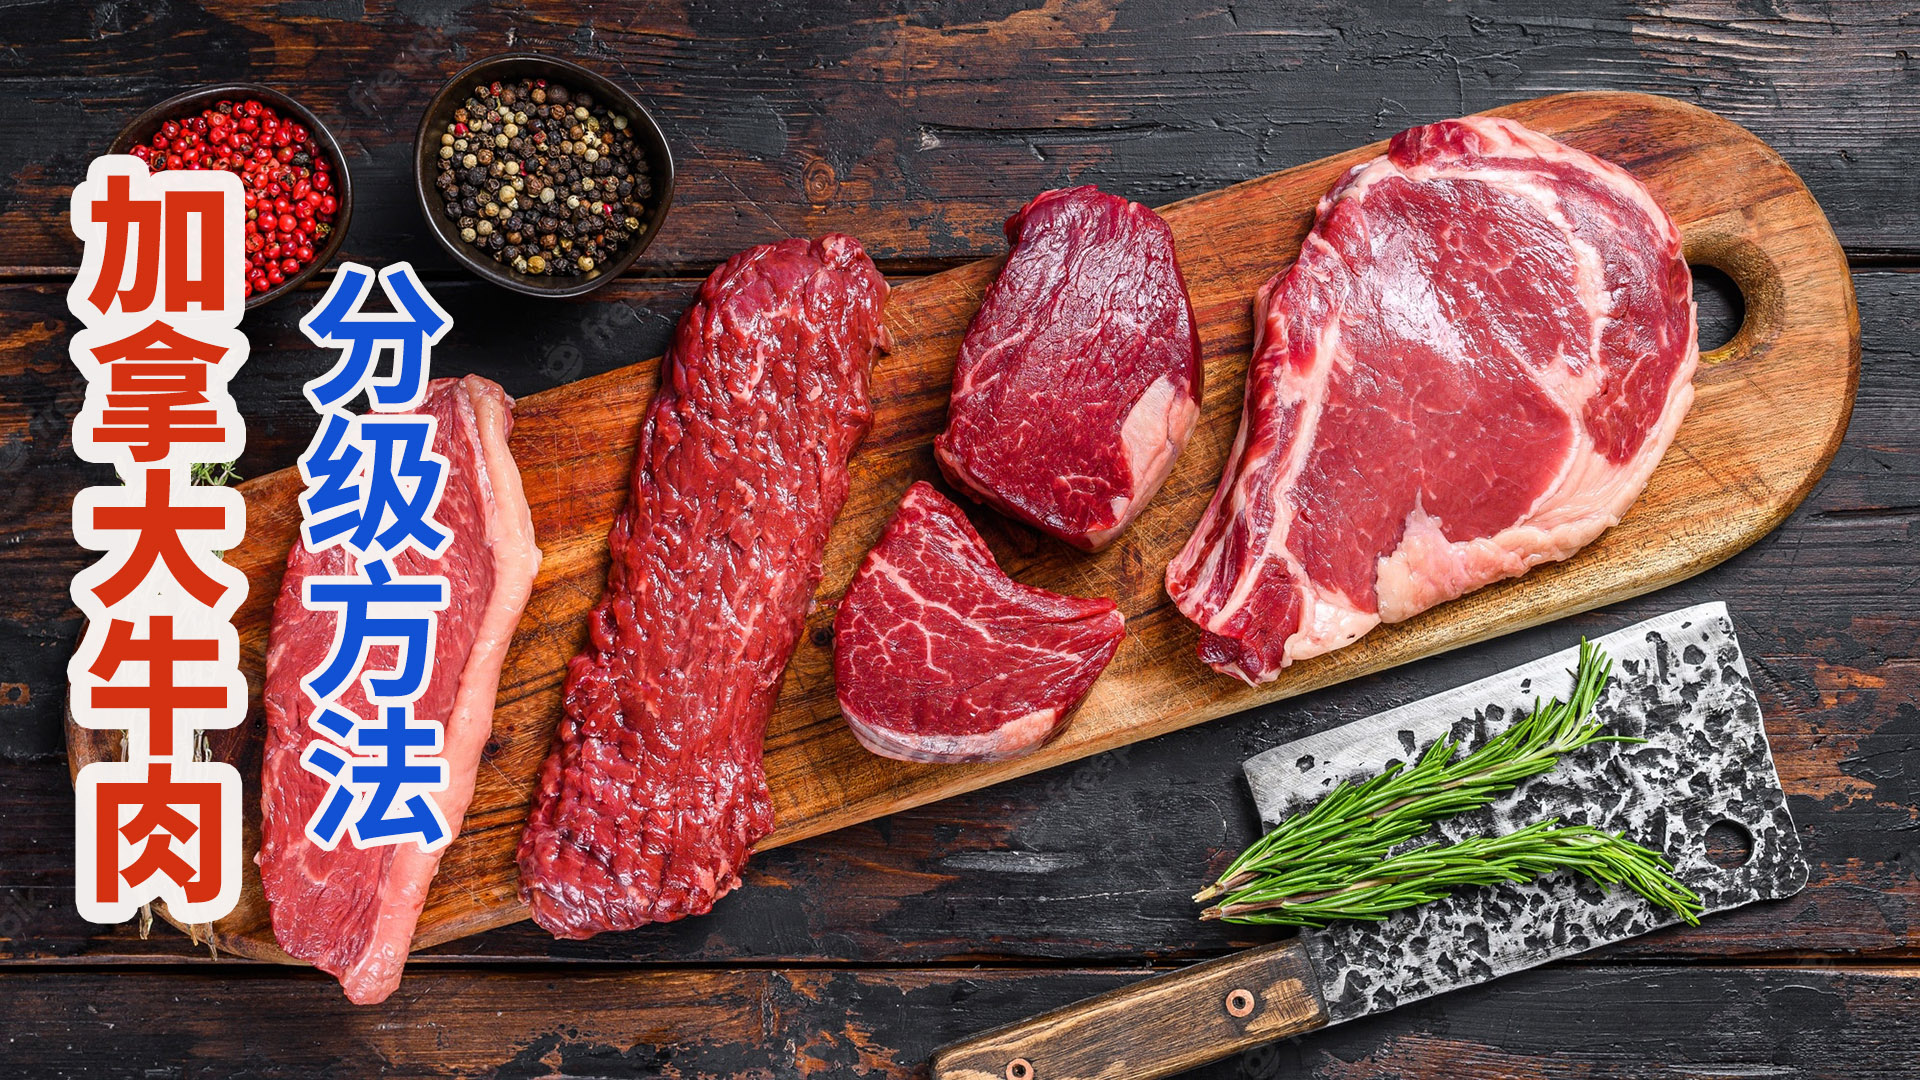 加拿大牛肉等级划分，高油花度大理石花纹肉最珍贵